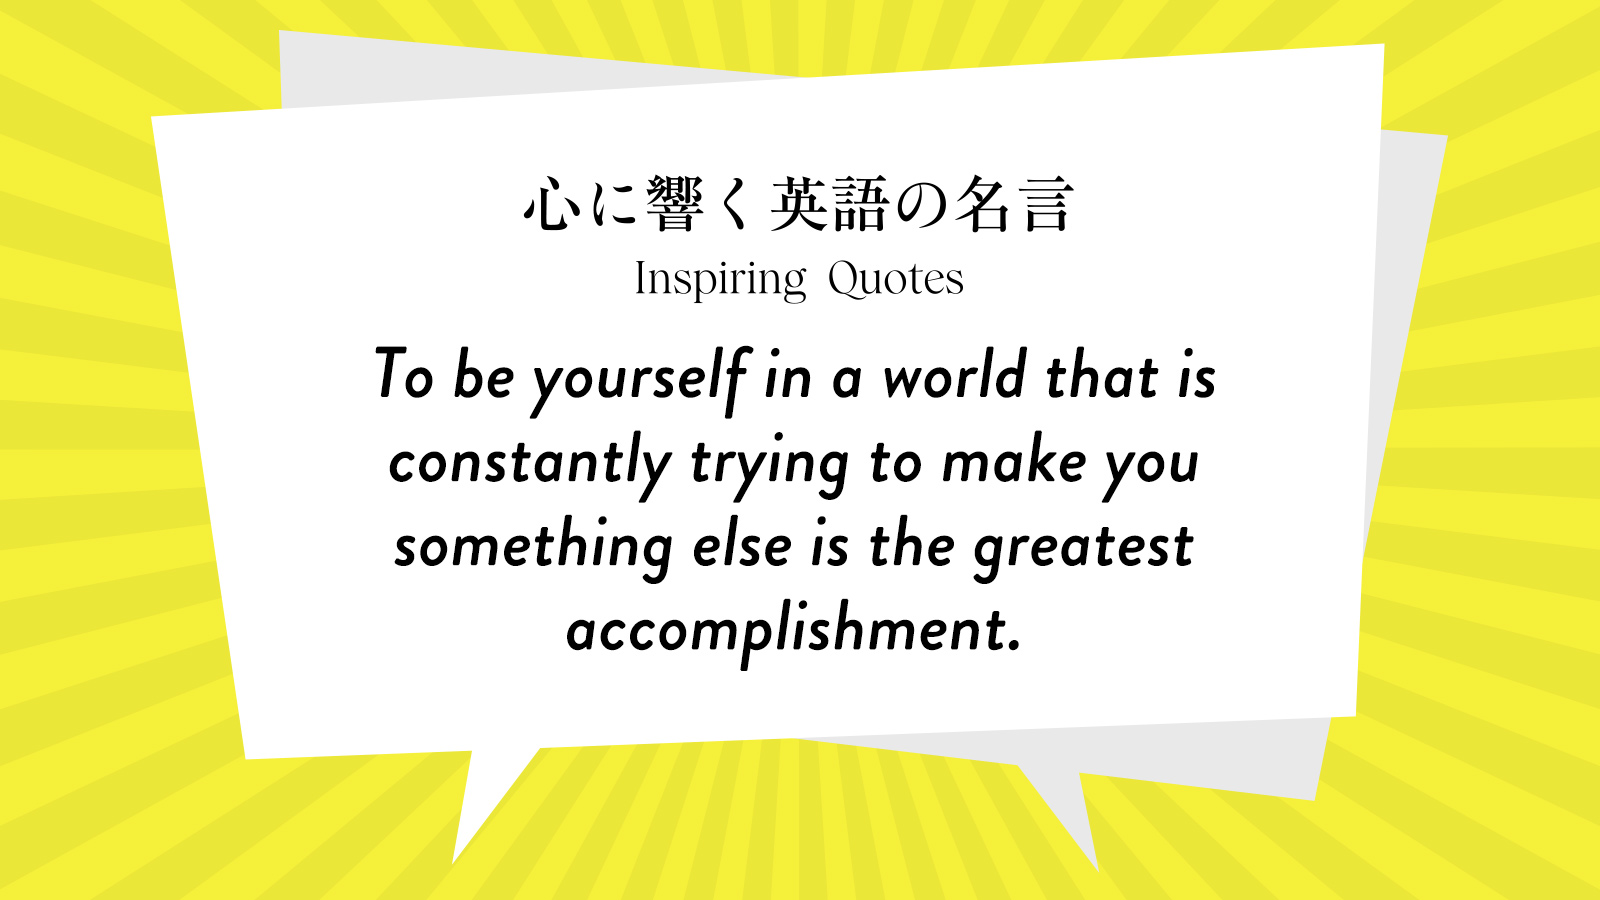 今週の名言 “To be yourself in a world that is constantly trying to make you something else~” | Inspiring Quotes: 心に響く英語の名言